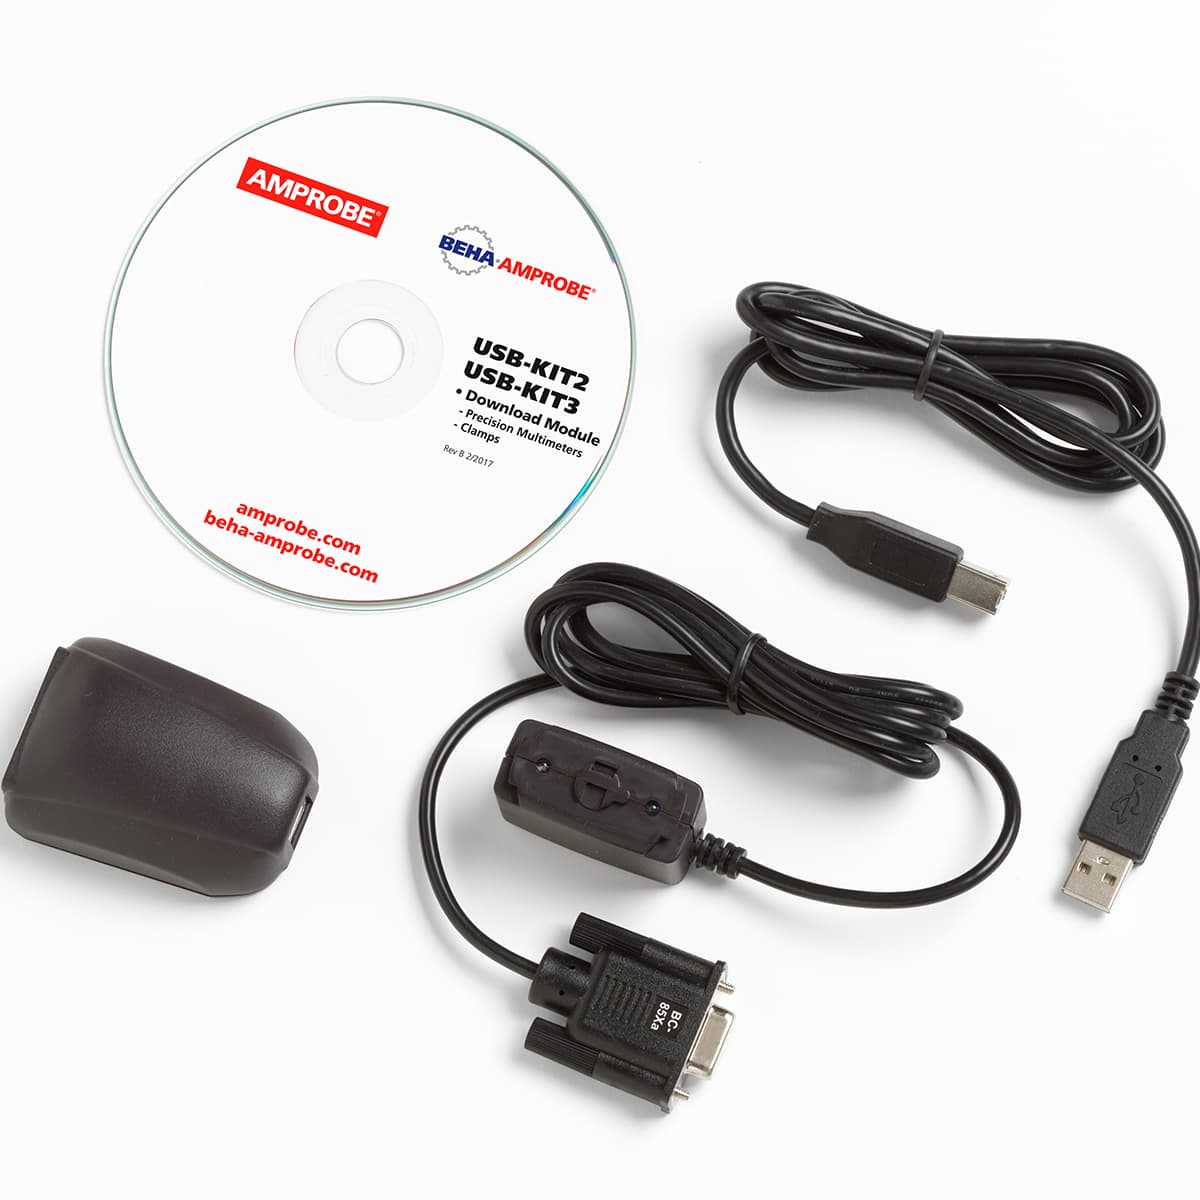 imagen principal de producto Software, módulo y cable para comunicación para multímetro 38XR-A. USB-KIT3